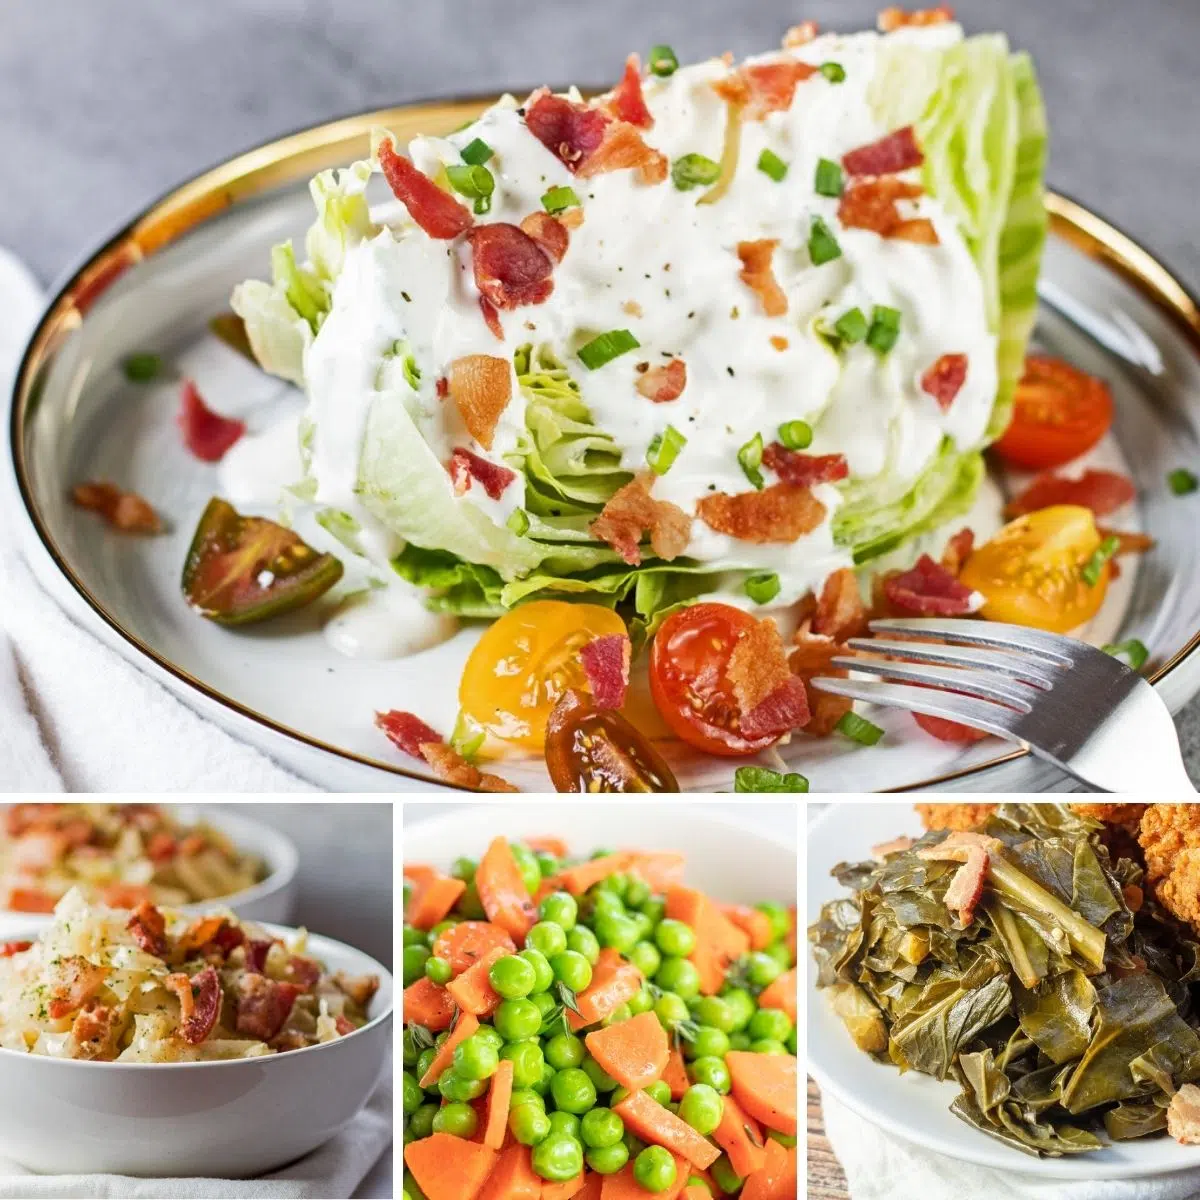 コラージュ画像のこれらの4つの注目のレシピで示されているように、どんな食事にも合う最高の野菜のおかず。